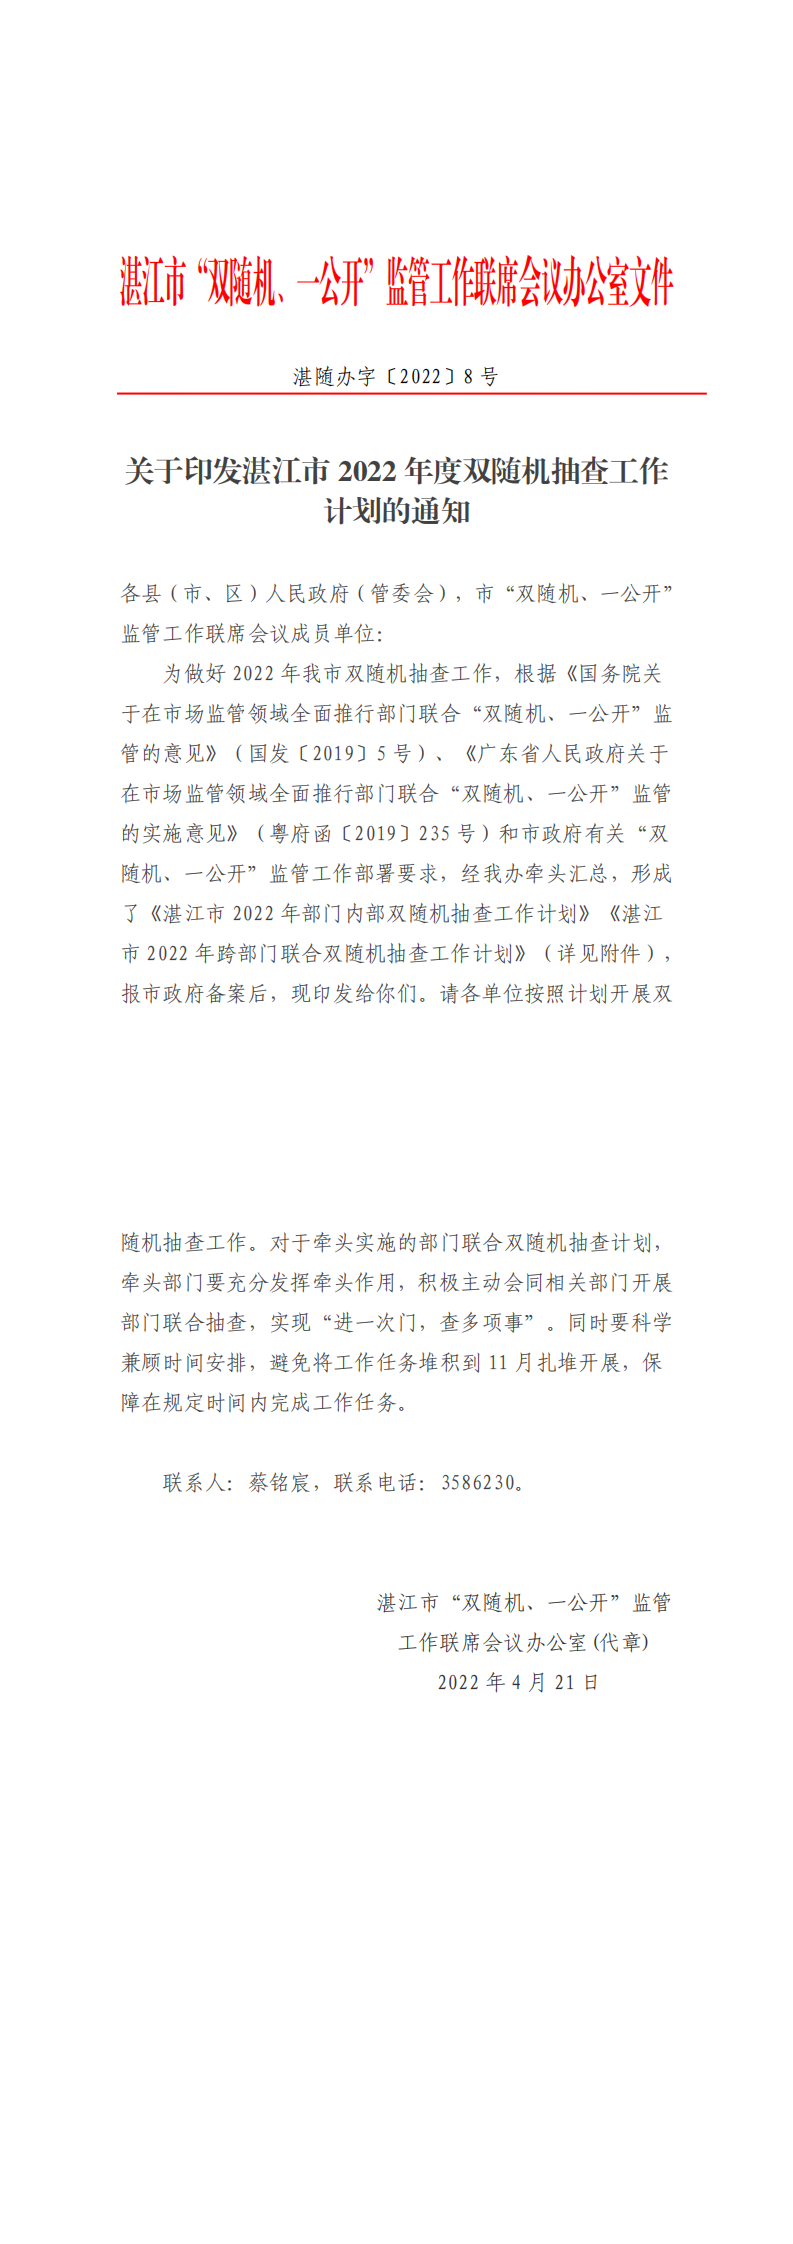 关于印发湛江市2022年度双随机抽查工作计划的通知_0.png